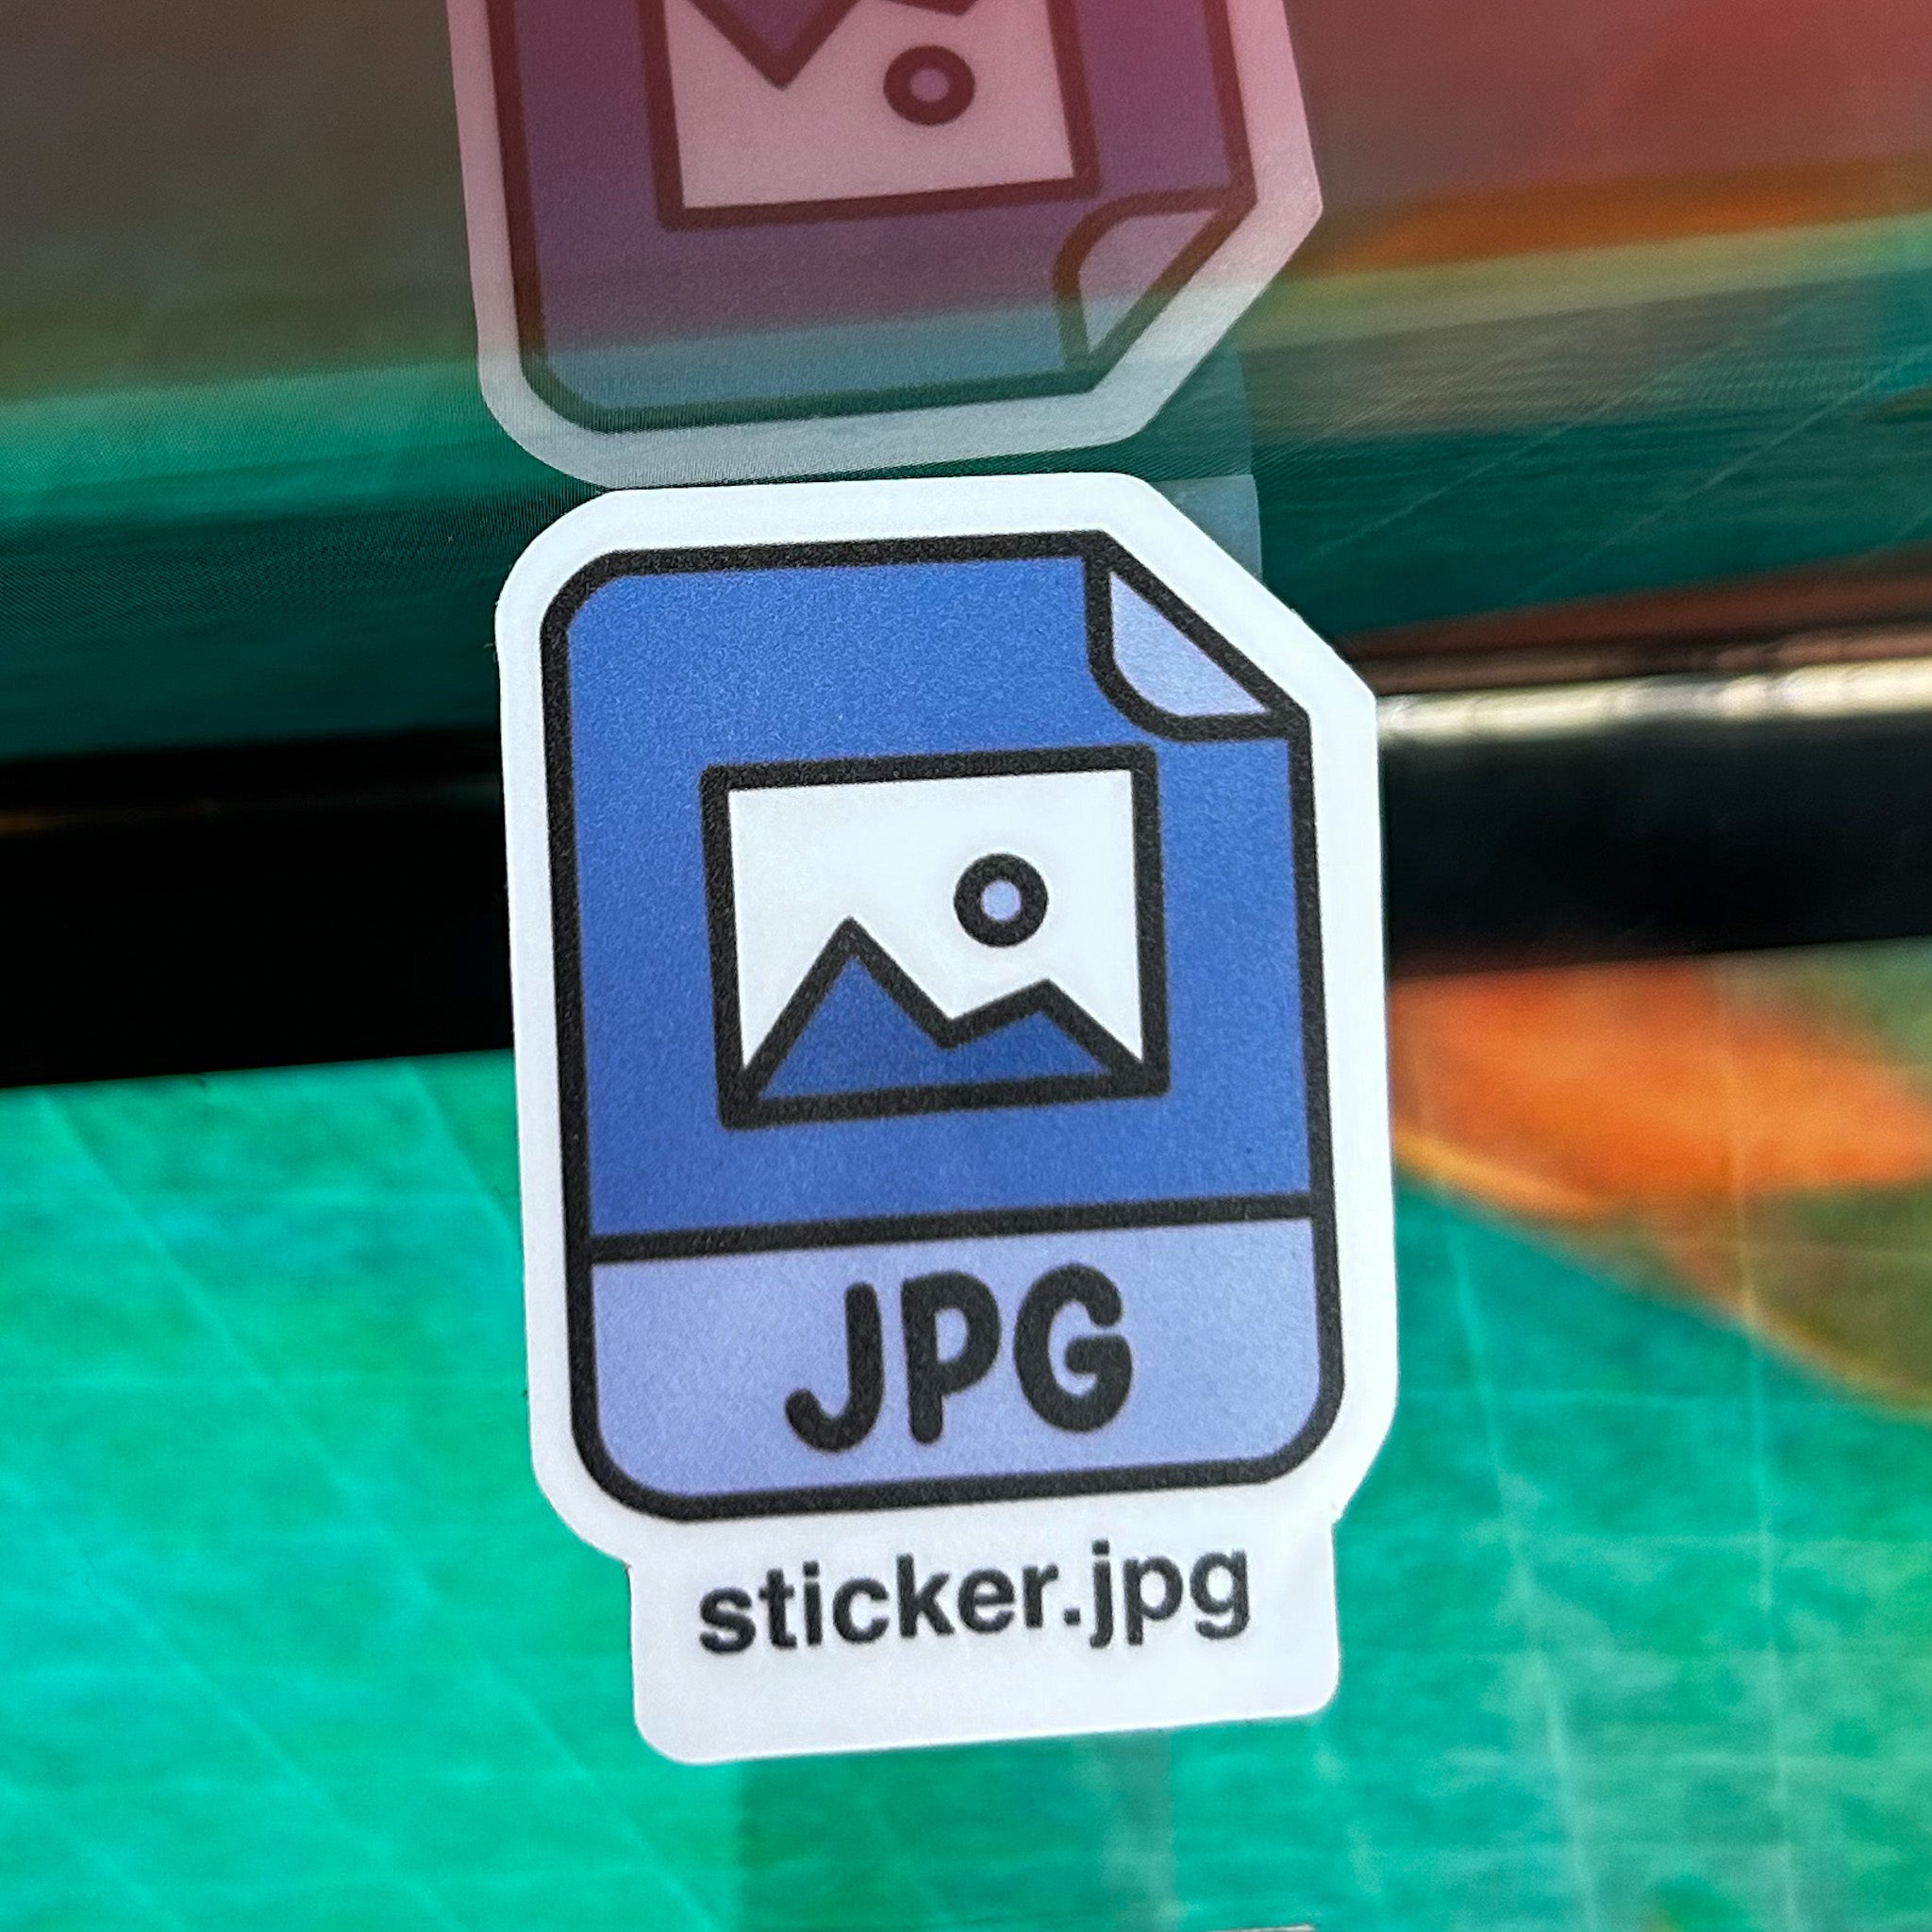 Sticker.JPG Sticker